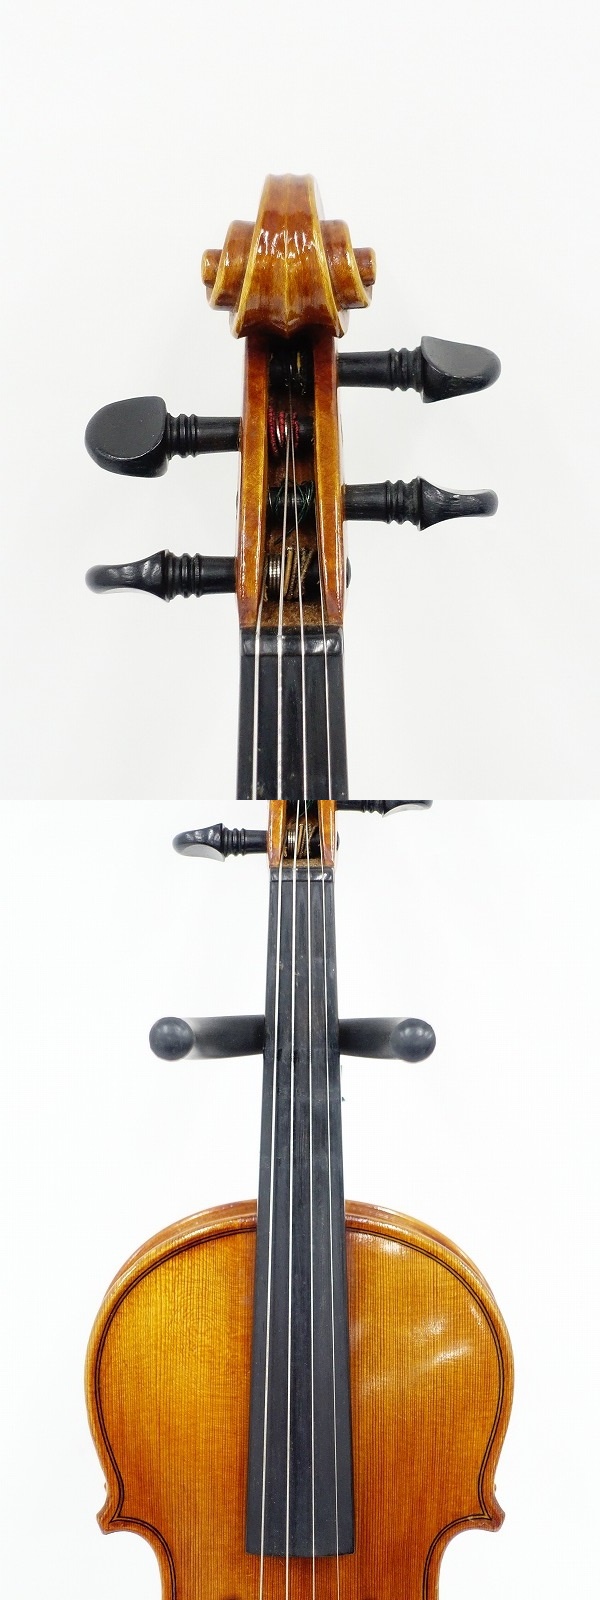 【人気お得】♪♪SUZUKI No.520 1982年製 バイオリン 1/8サイズ スズキ 鈴木 ハードケース付♪♪011178002m♪♪ バイオリン